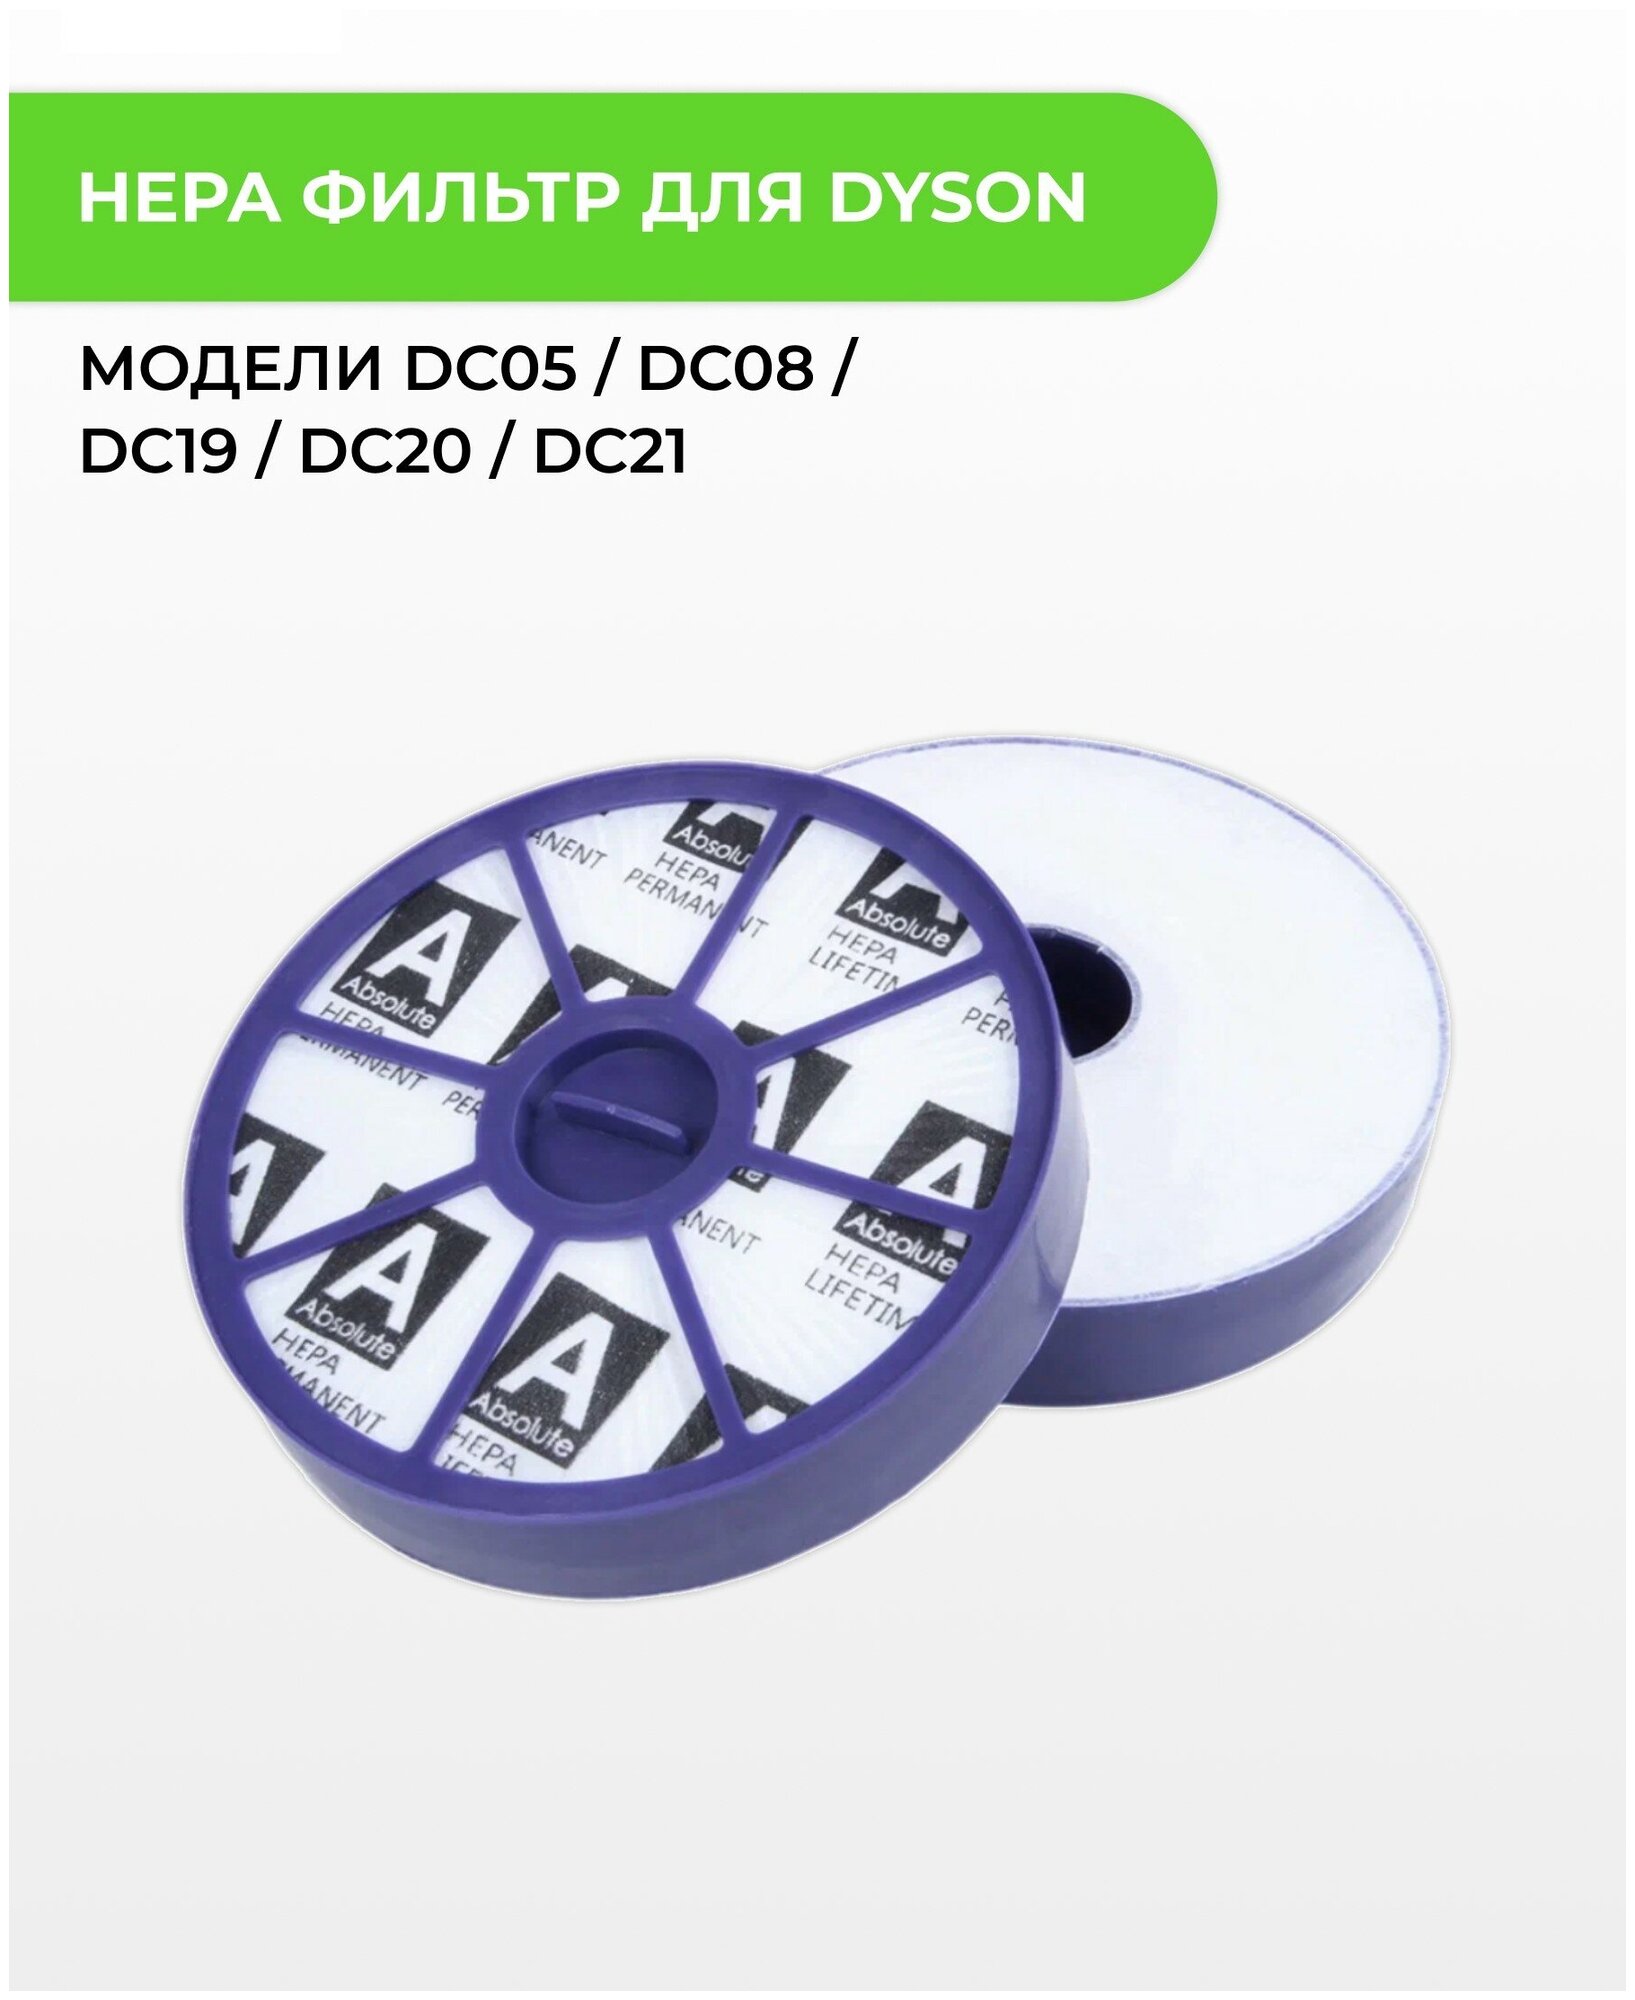 Hepa фильтр ABC для пылесоса Dyson DC05 / DC08 / DC19 / DC20 / DC21